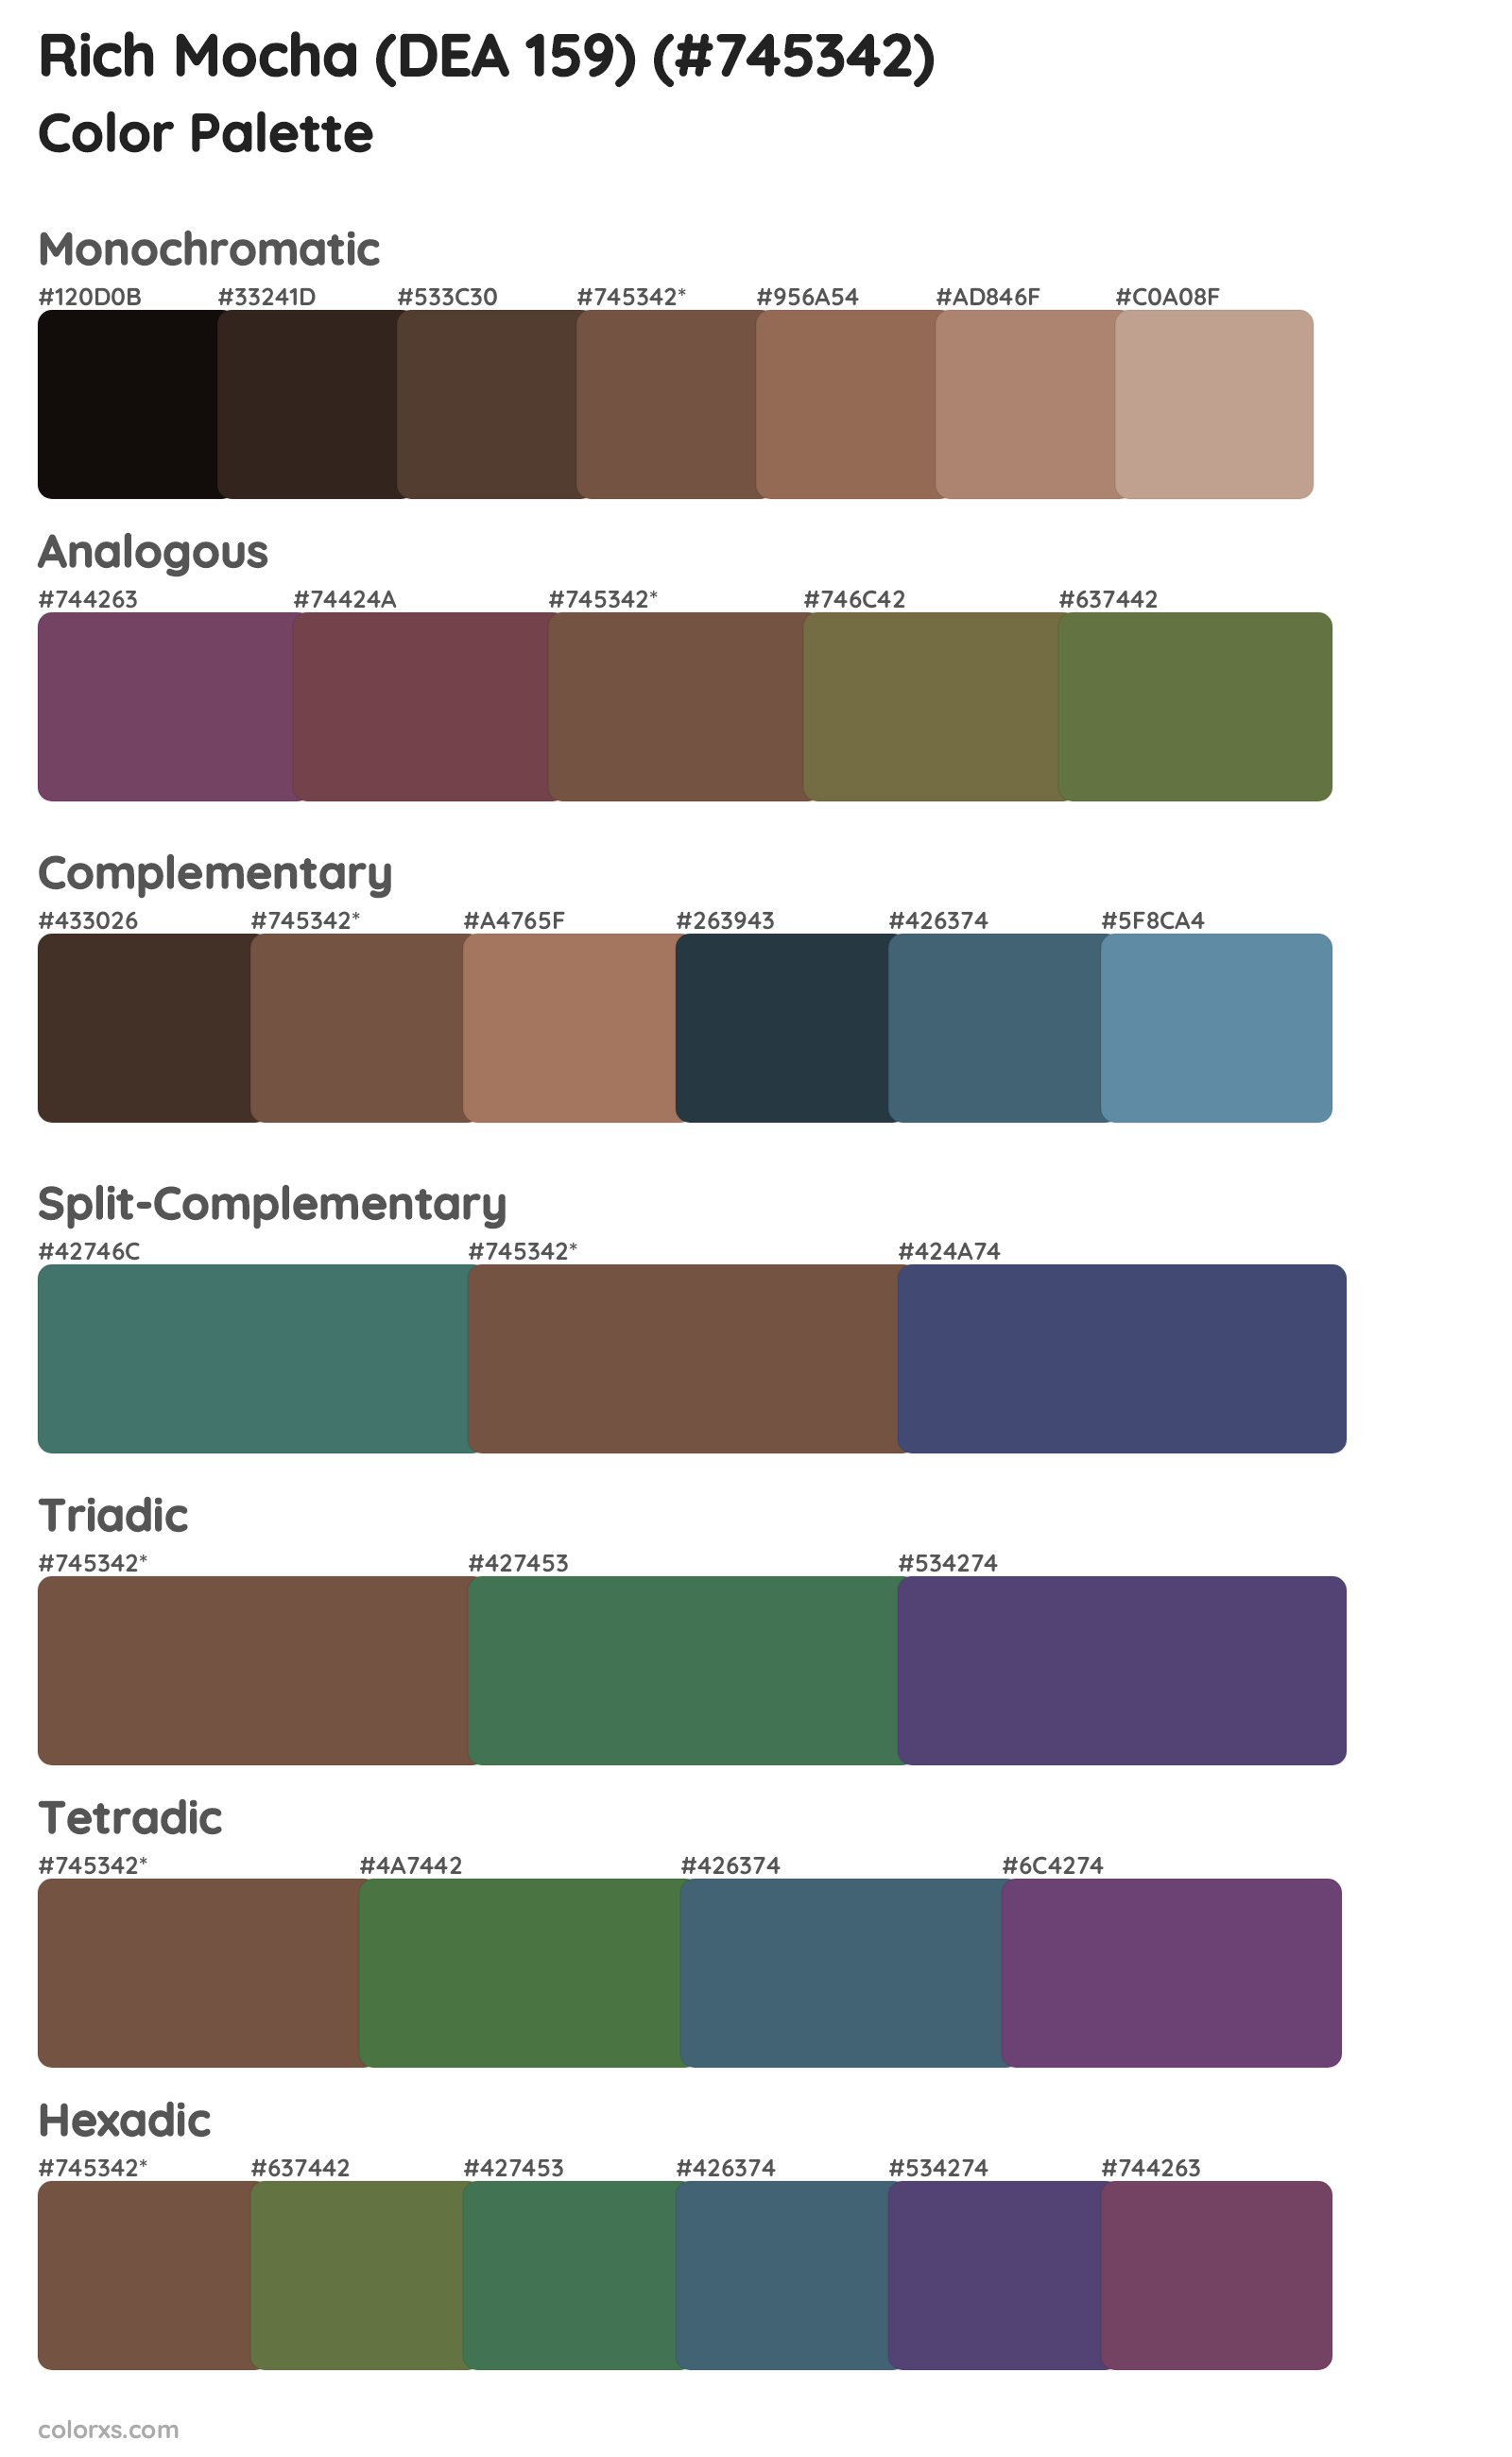 Rich Mocha (DEA 159) Color Scheme Palettes